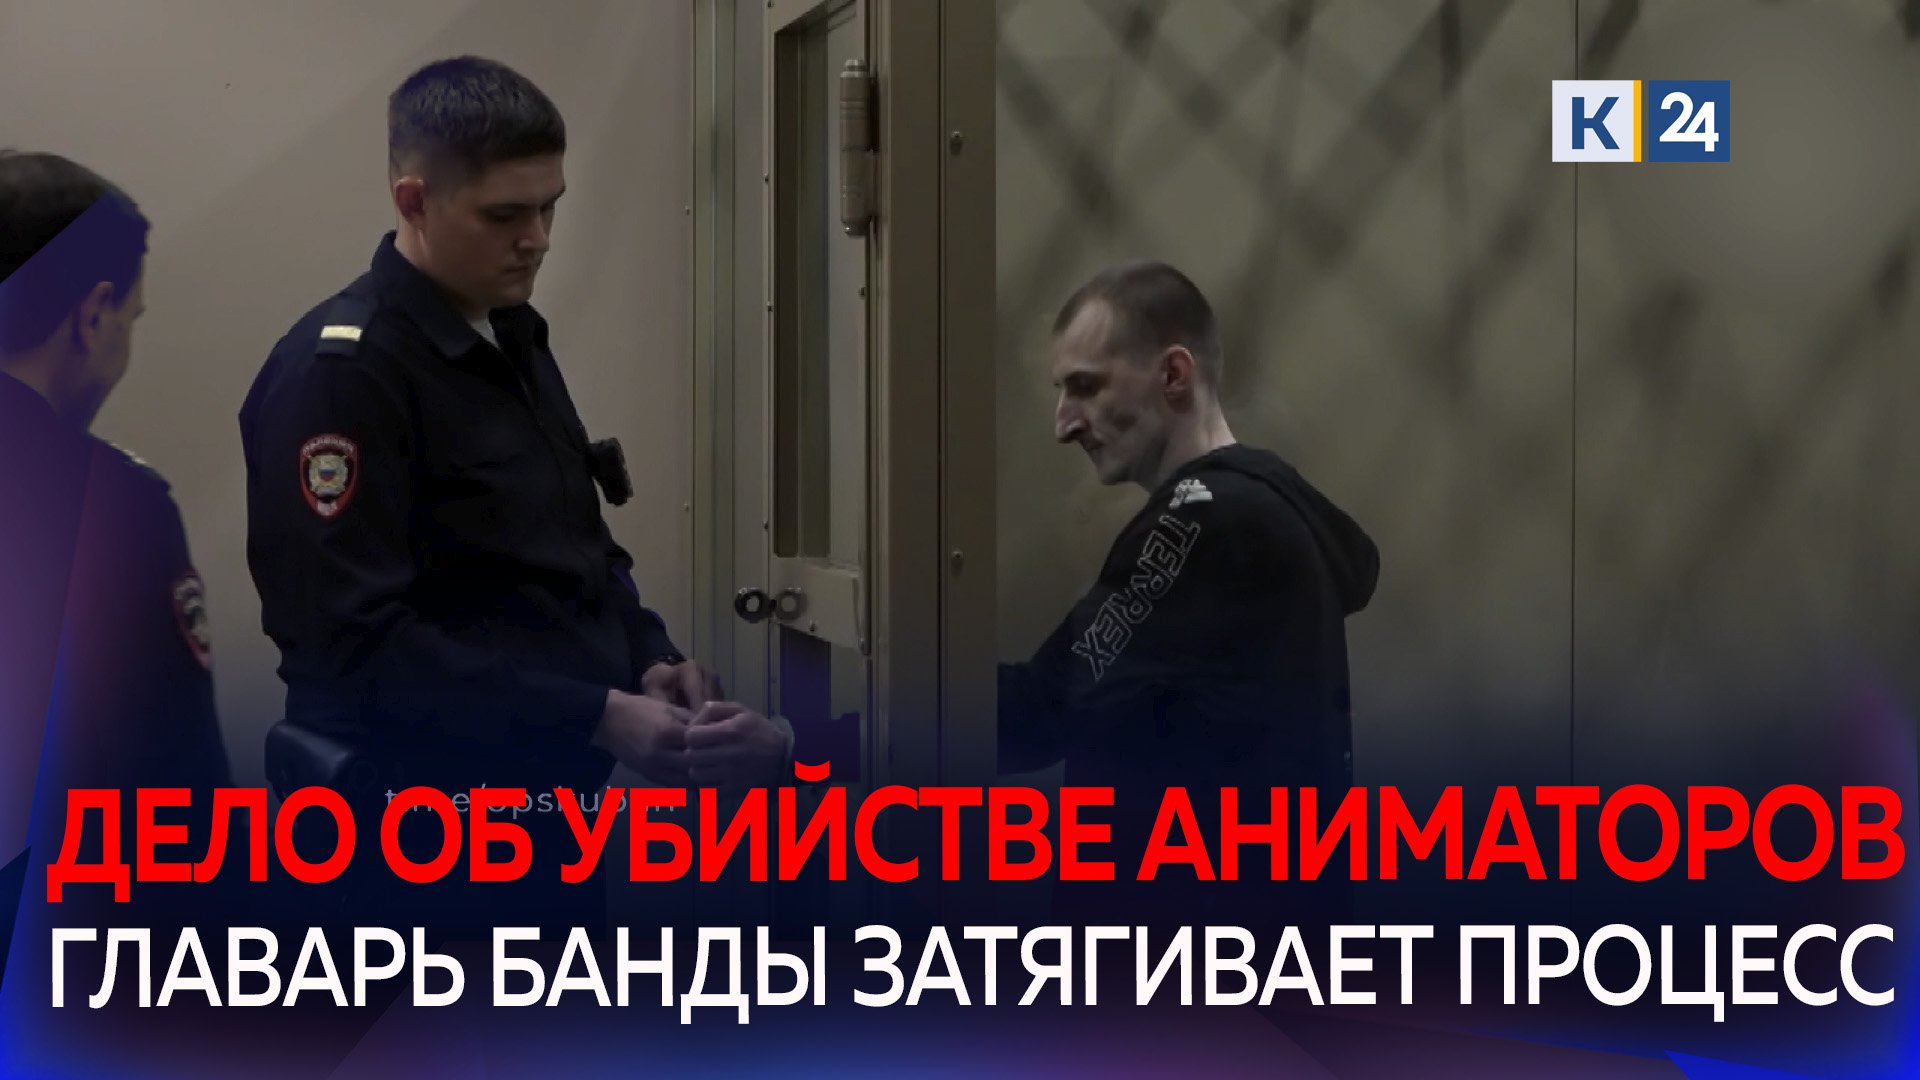 Краевой суд объявил дату начала судебного процесса по громкому делу об убийстве аниматоров